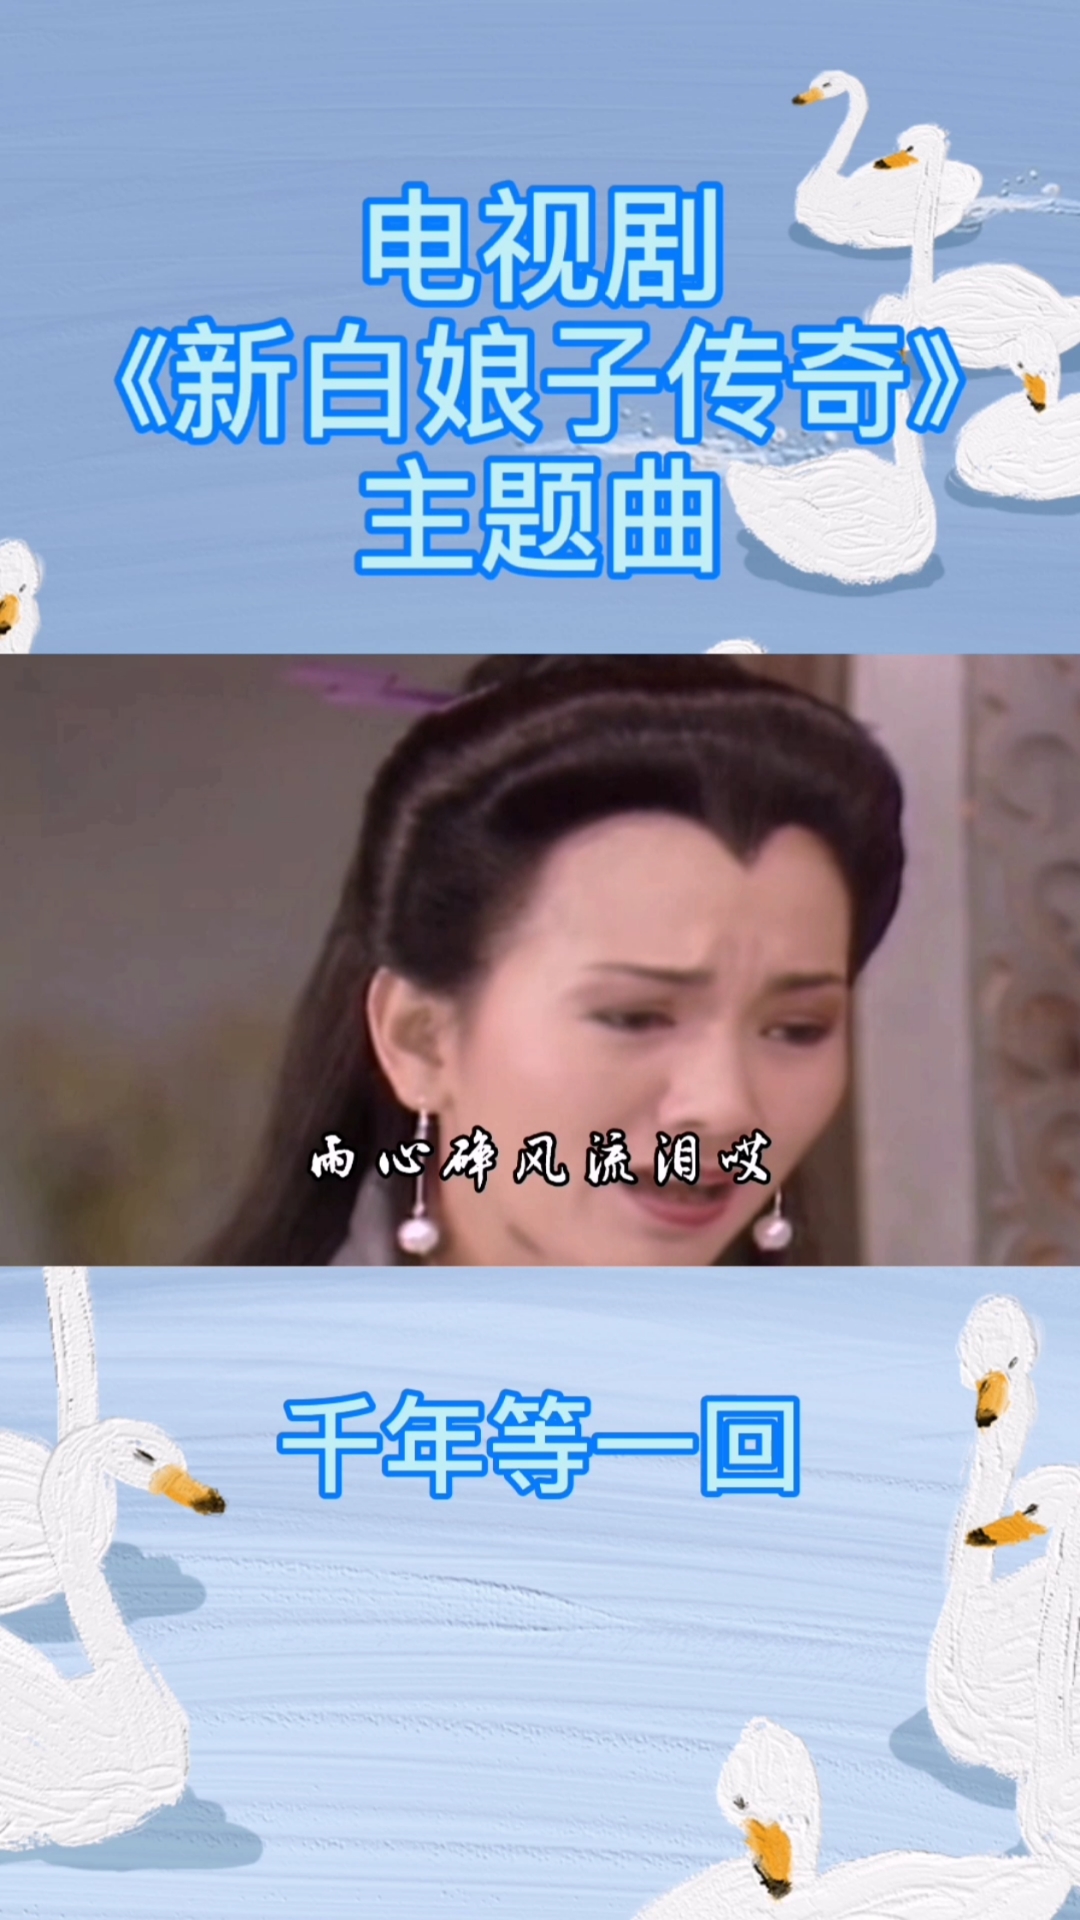 《新白娘子传奇》主题曲,华语乐坛传唱率最高的歌曲之一《千年等一回